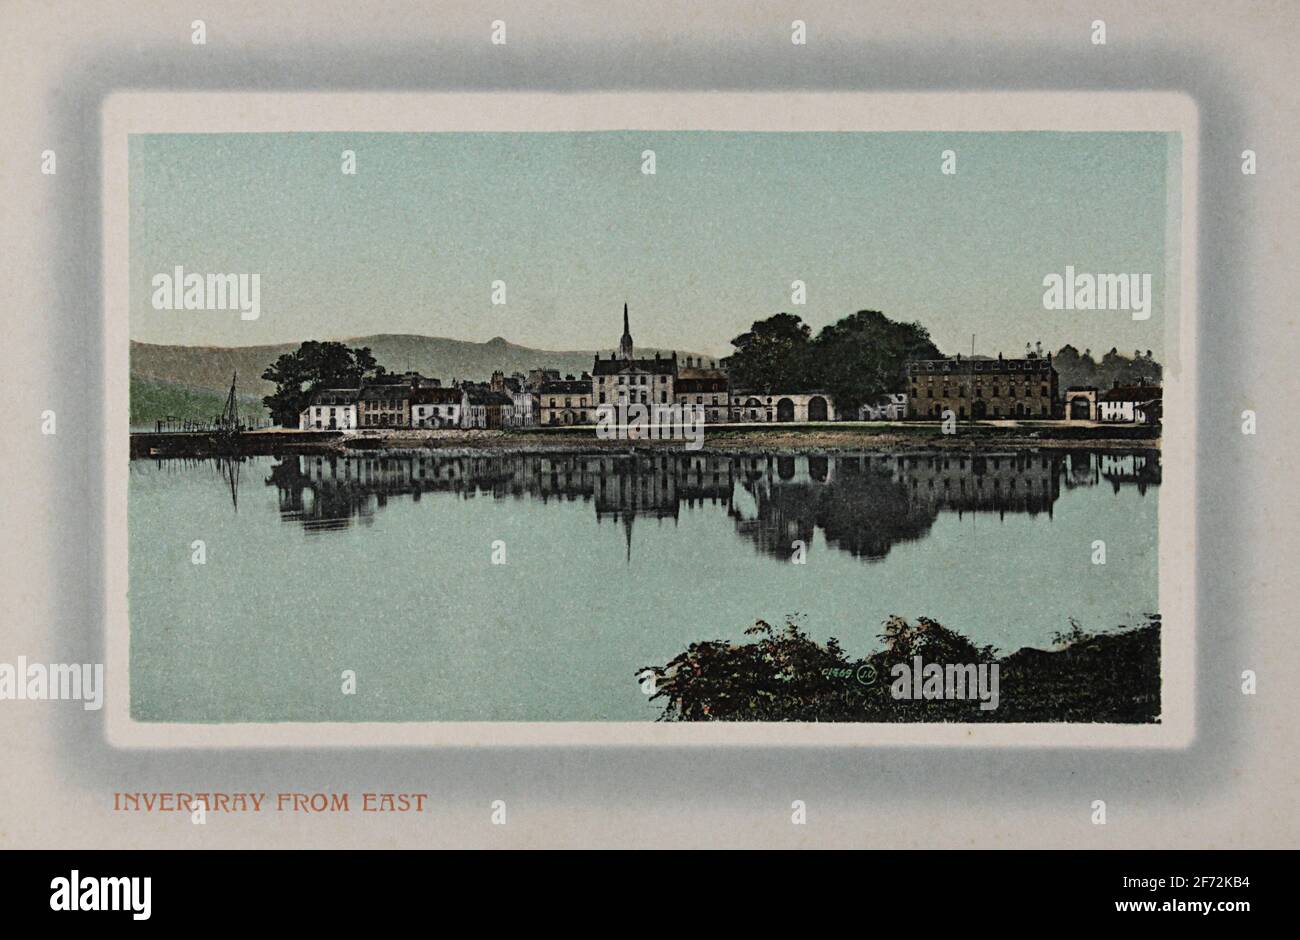 Postkarte mit der Stadt Inveraray aus dem Osten. Die Stadt liegt am Ufer des Loch Fyne und ist ein perfektes Beispiel für die Stadtplanung aus dem 18. Jahrhundert Stockfoto